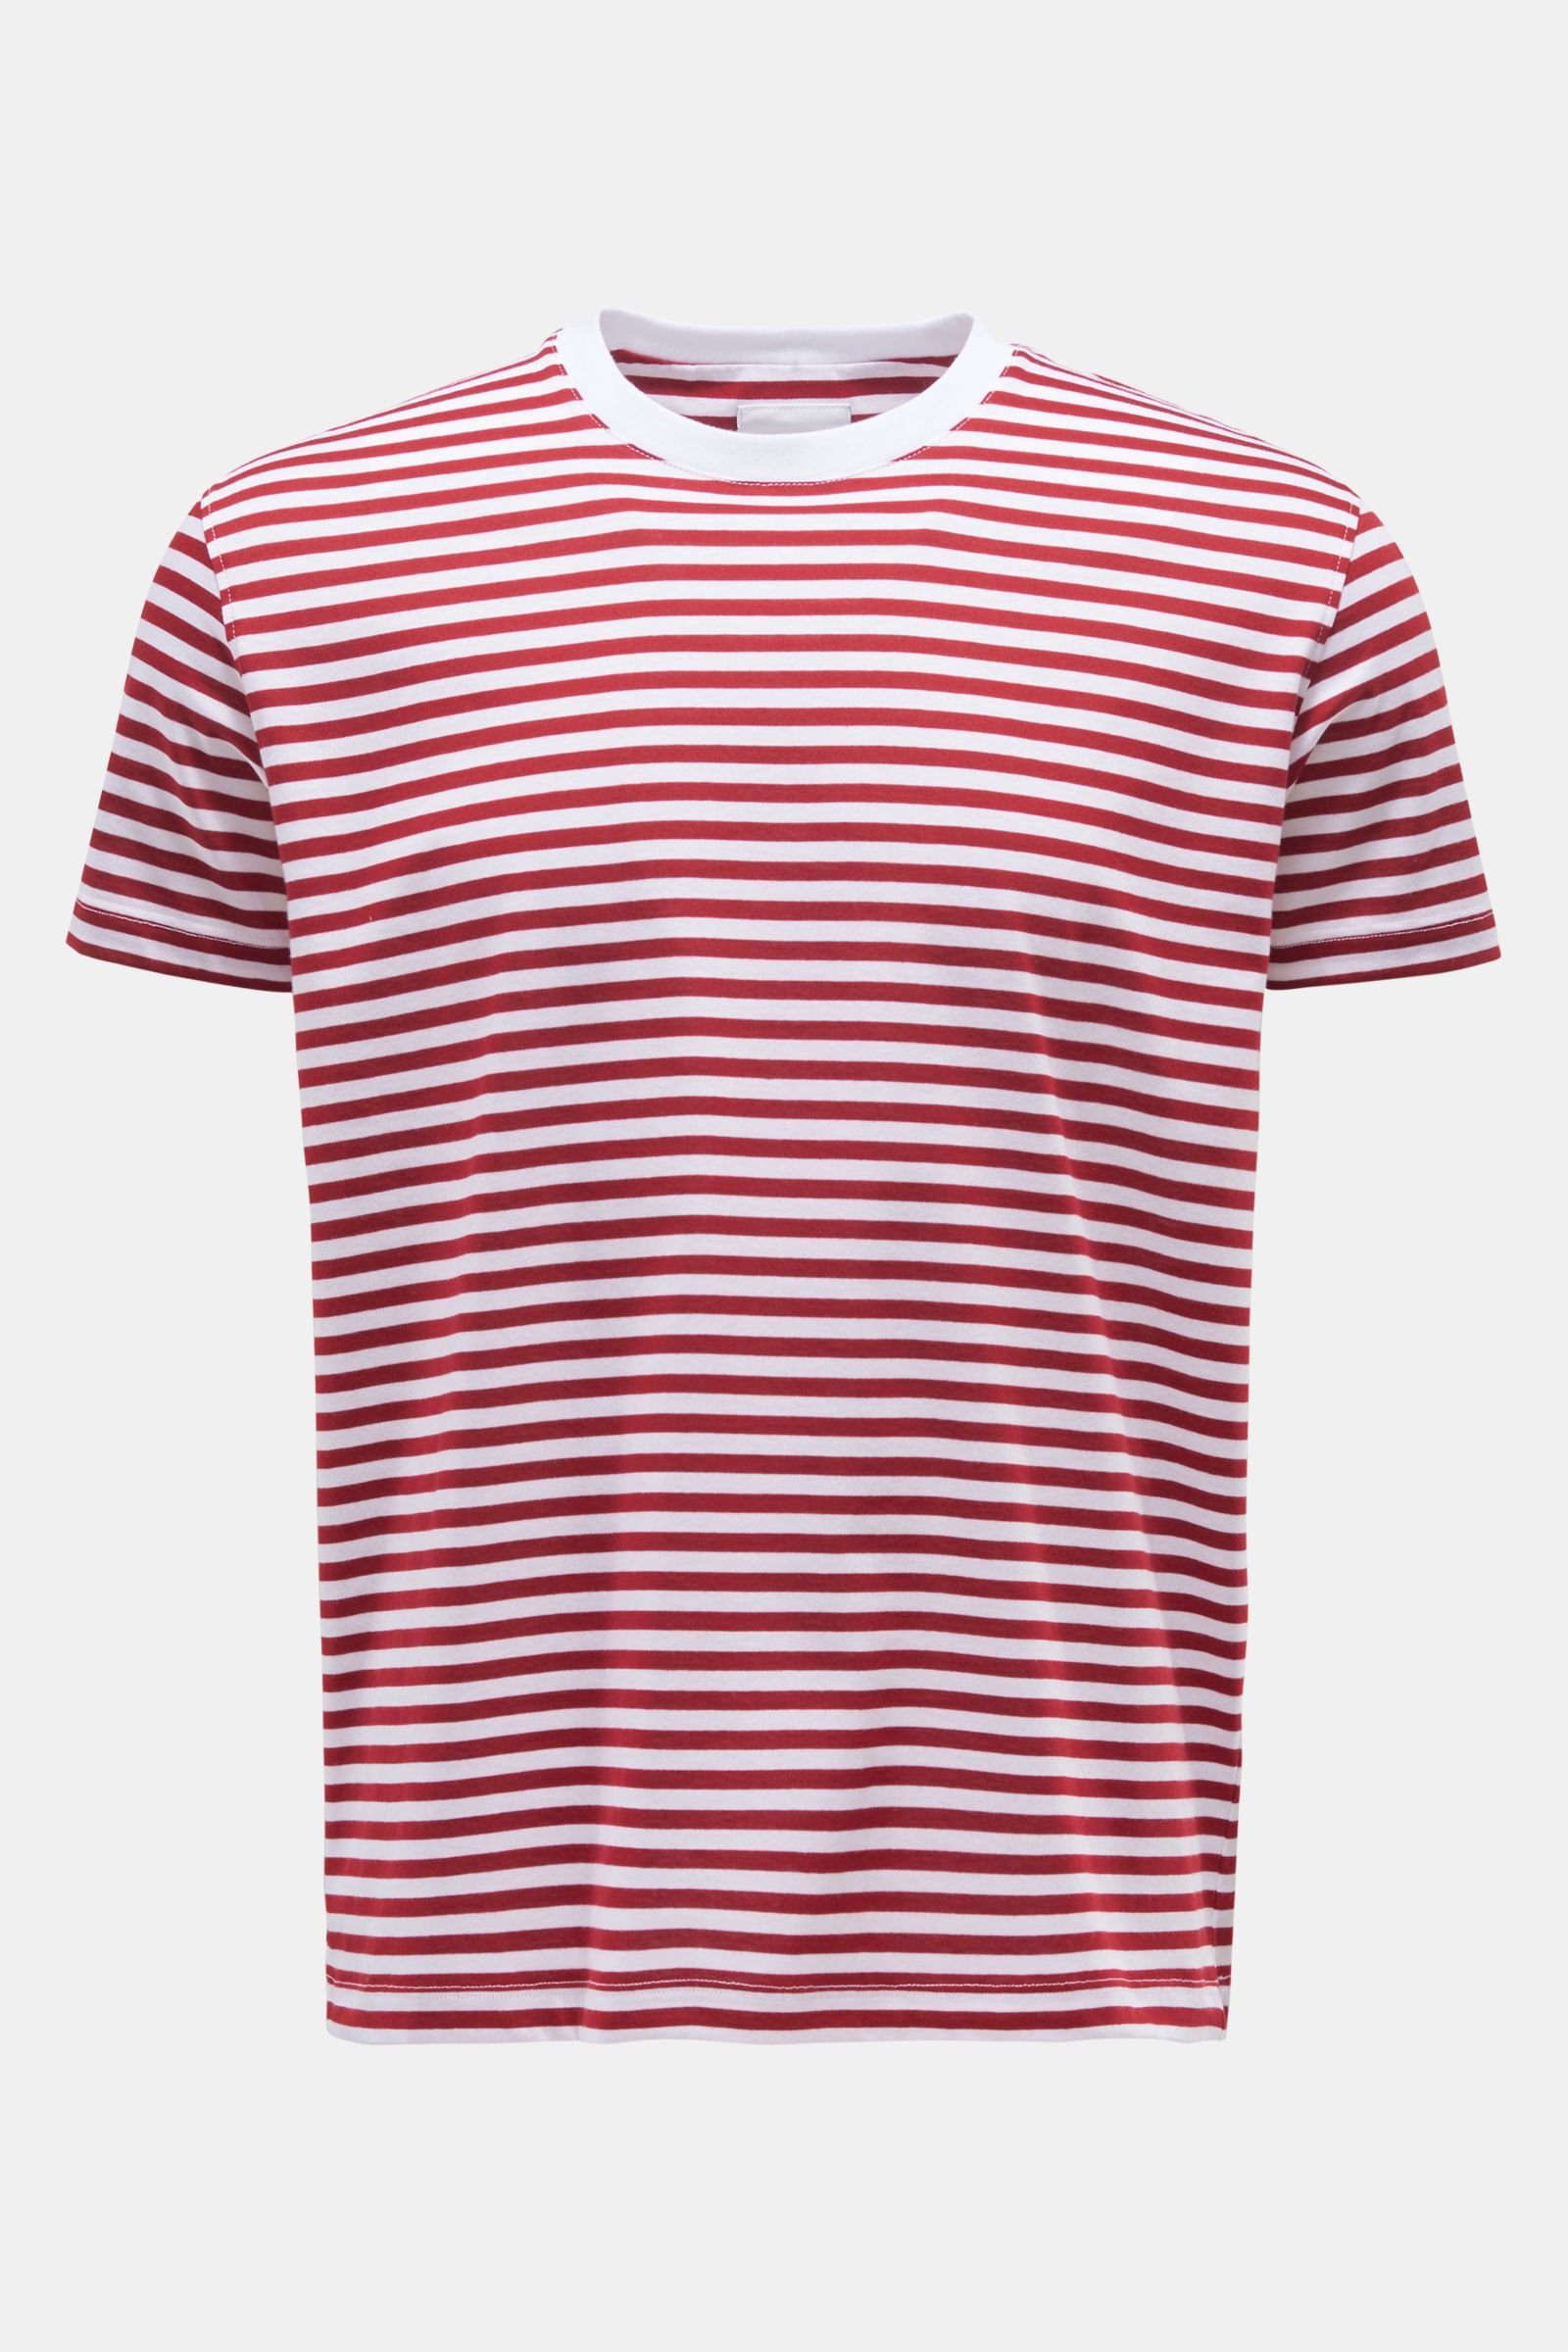 Rundhals-T-Shirt rot/weiß gestreift